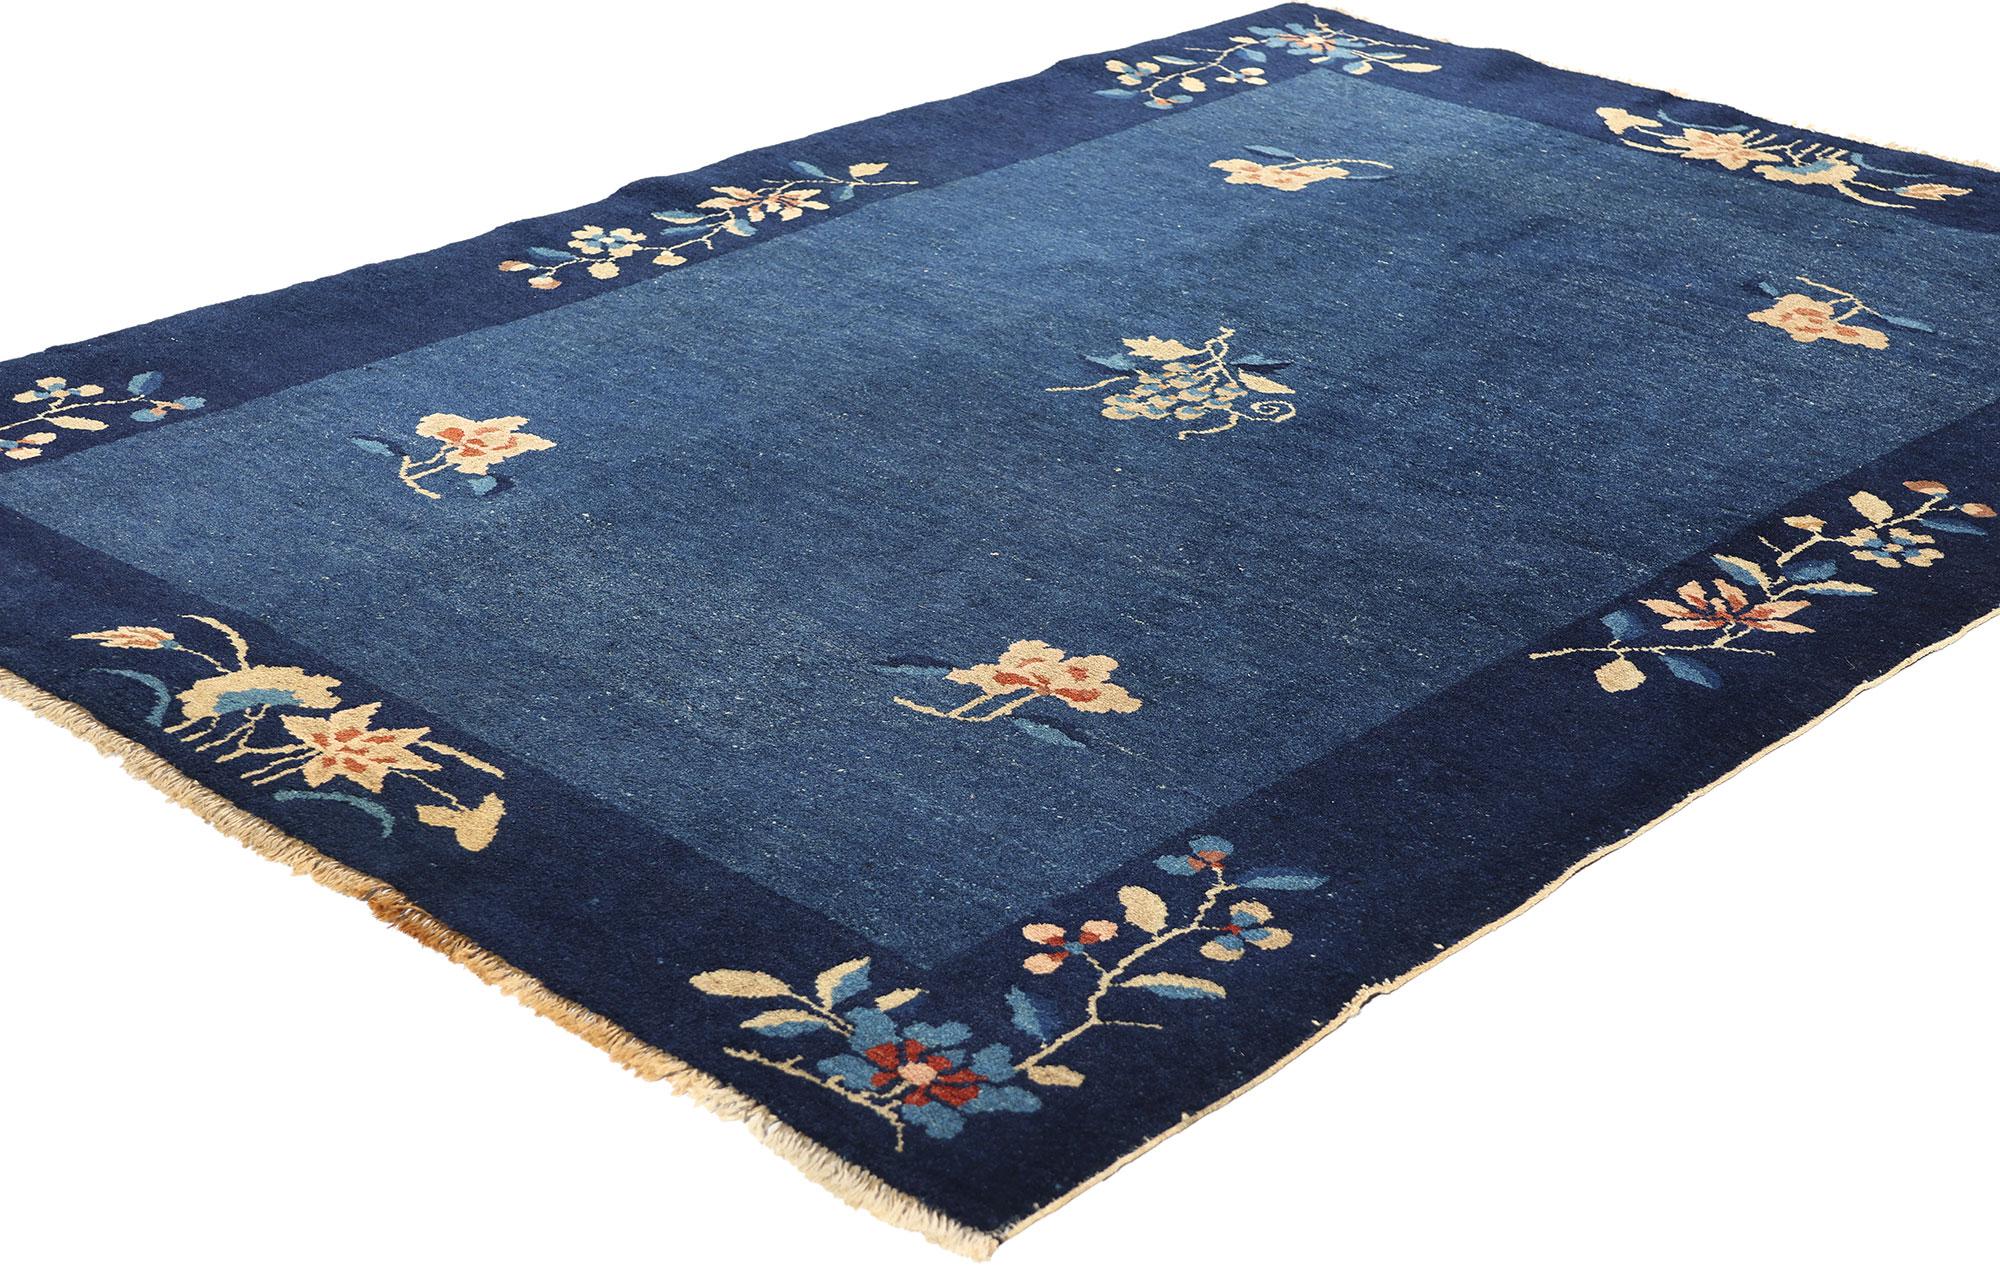 78762 Antiker blauer chinesischer Peking-Teppich, 04'00 x 05'09. Chinesische Peking-Teppiche stammen aus Peking (früher bekannt als Peking), China, und sind bekannt für ihre komplizierten Muster, leuchtenden Farben und ihren dicken Wollflor. Diese